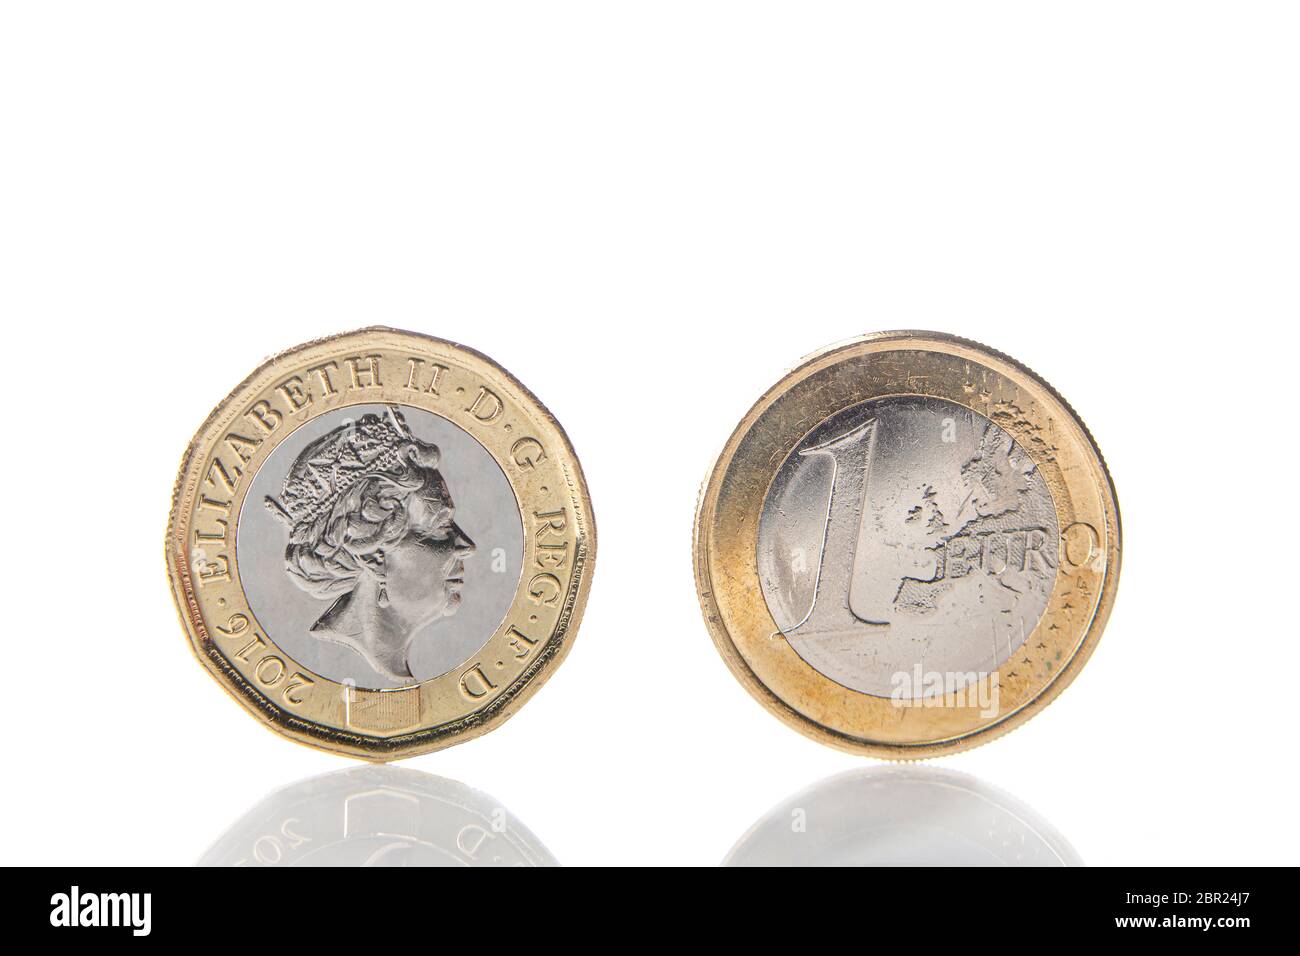 Eine Pfund-Münze mit dem Gesicht von Königin Elisabeth II. Vor einer 1-Euro- Münze, die am Rand und mit Spiegelung auf weißem Hintergrund thront  Stockfotografie - Alamy